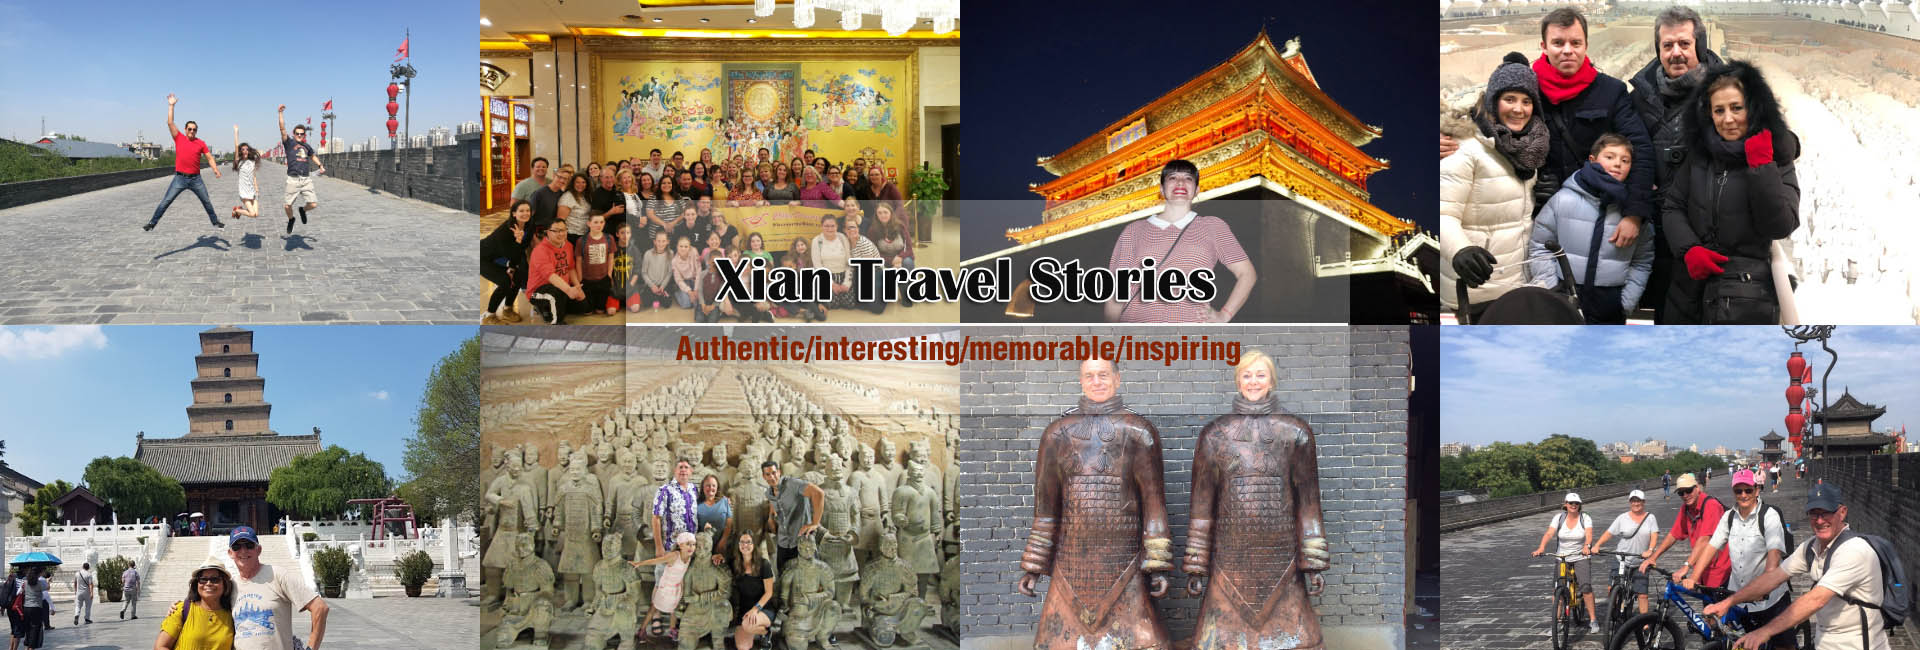 Xian Travel Stories